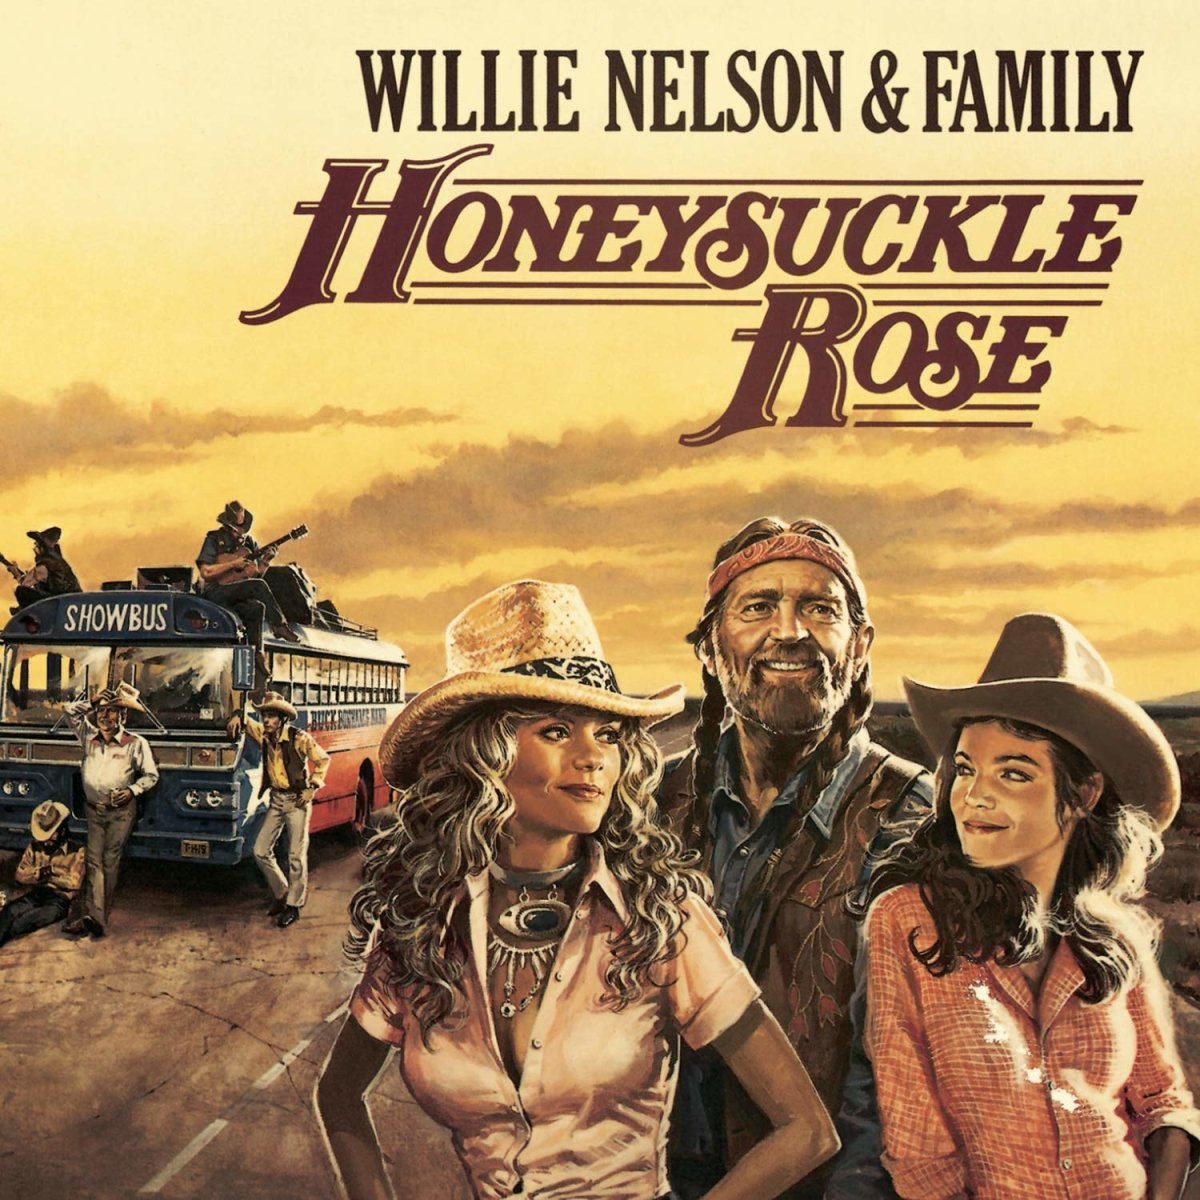 Willie Nelson & Family - Honeysuckle Rose Records & LPs Vinyl